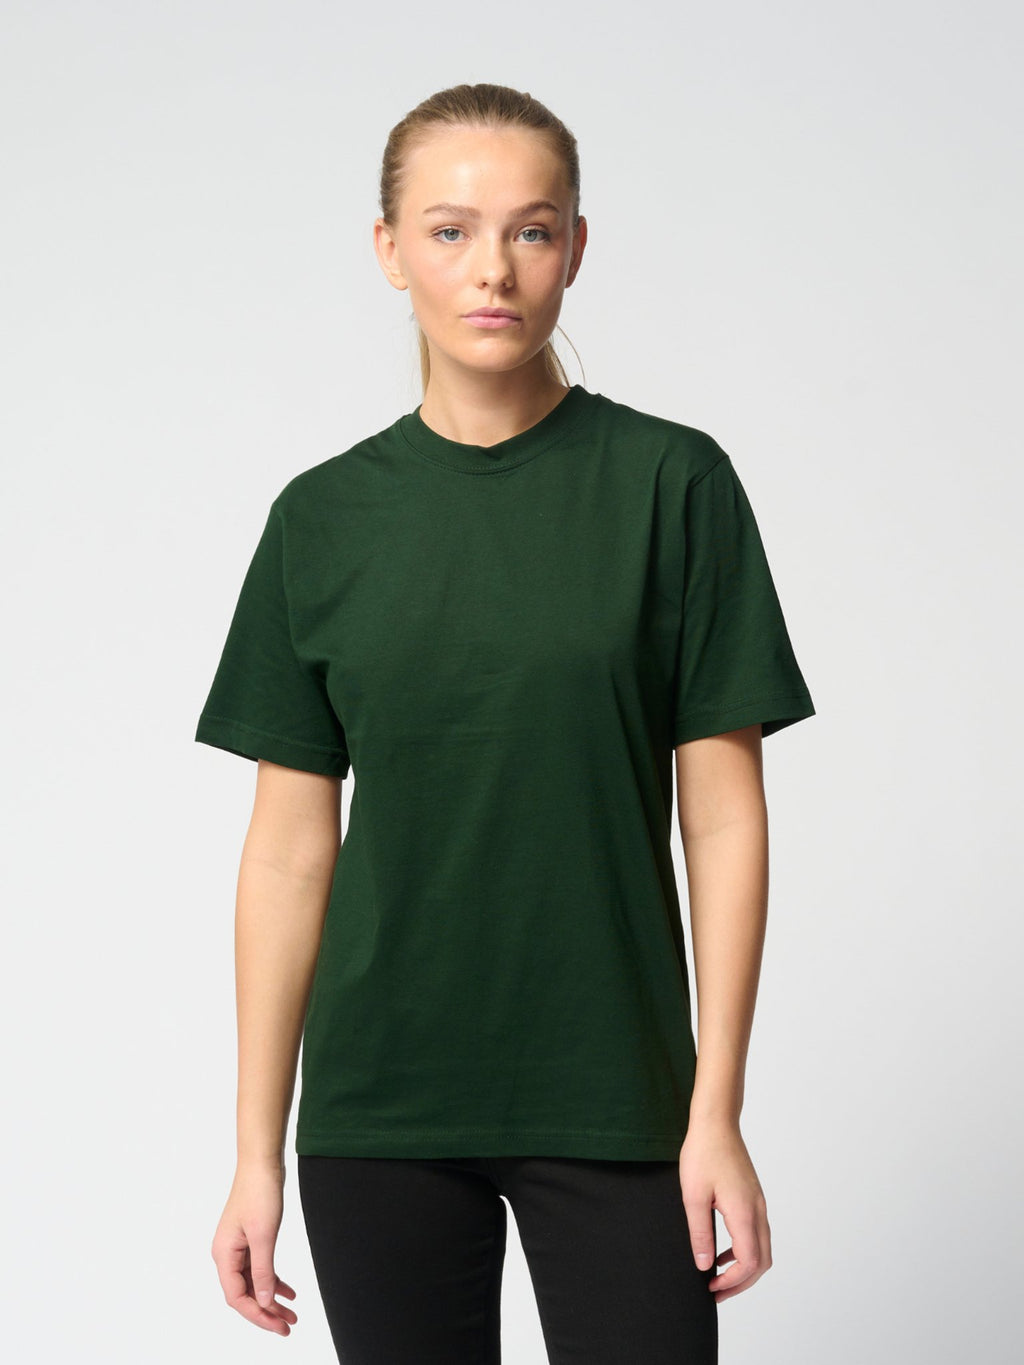 Ylisuuri T-paita-Naisten paketti (6 kpl.)